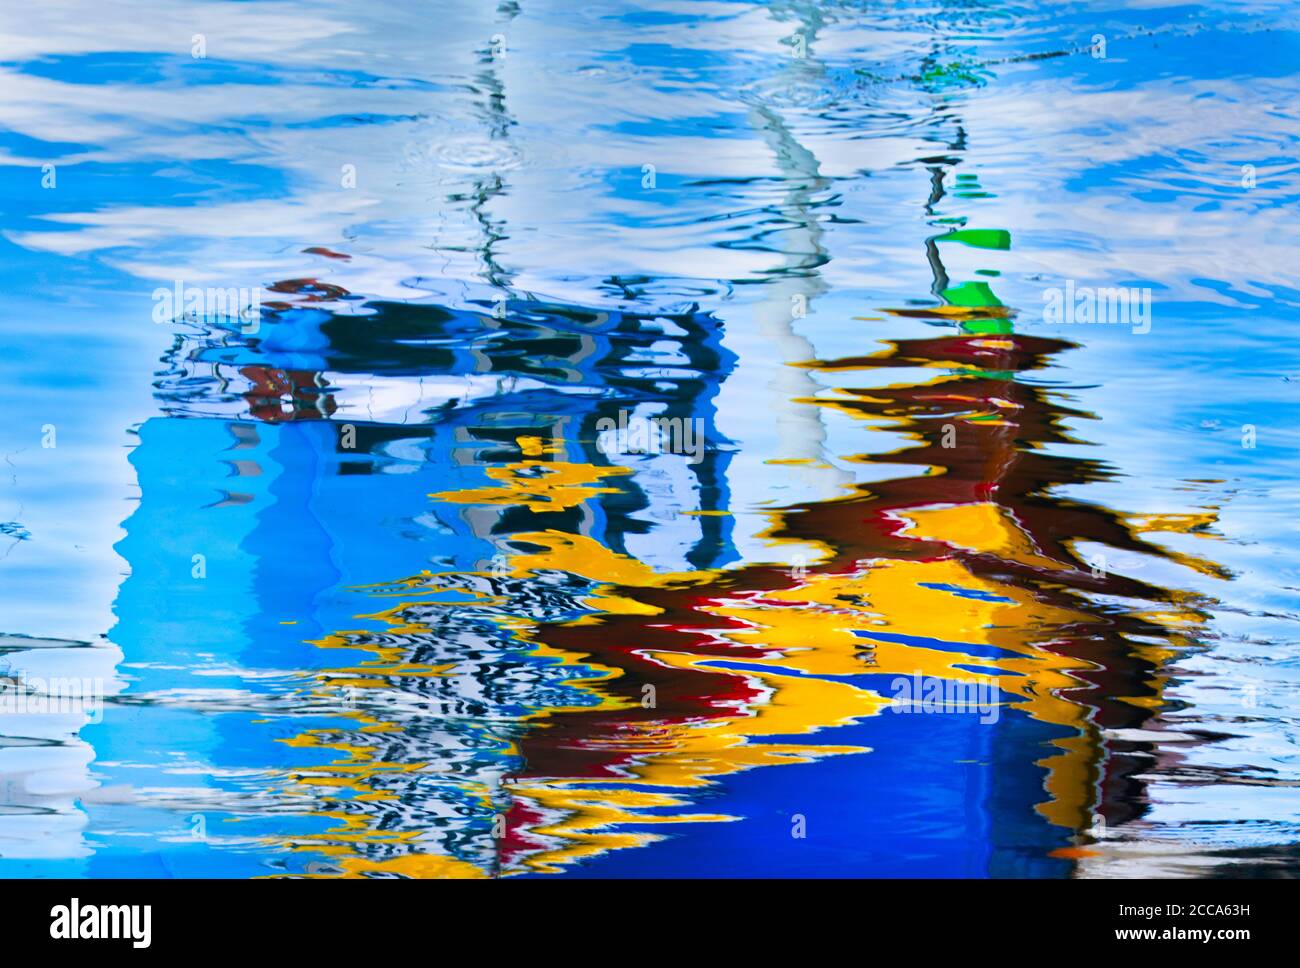 Arrière-plan coloré, arrière-plan abstrait, motif coloré, arc-en-ciel, arrière-plan d'eau, réflexions sur l'eau. Couleurs du bateau sur une eau. Couleurs Luzzu Banque D'Images